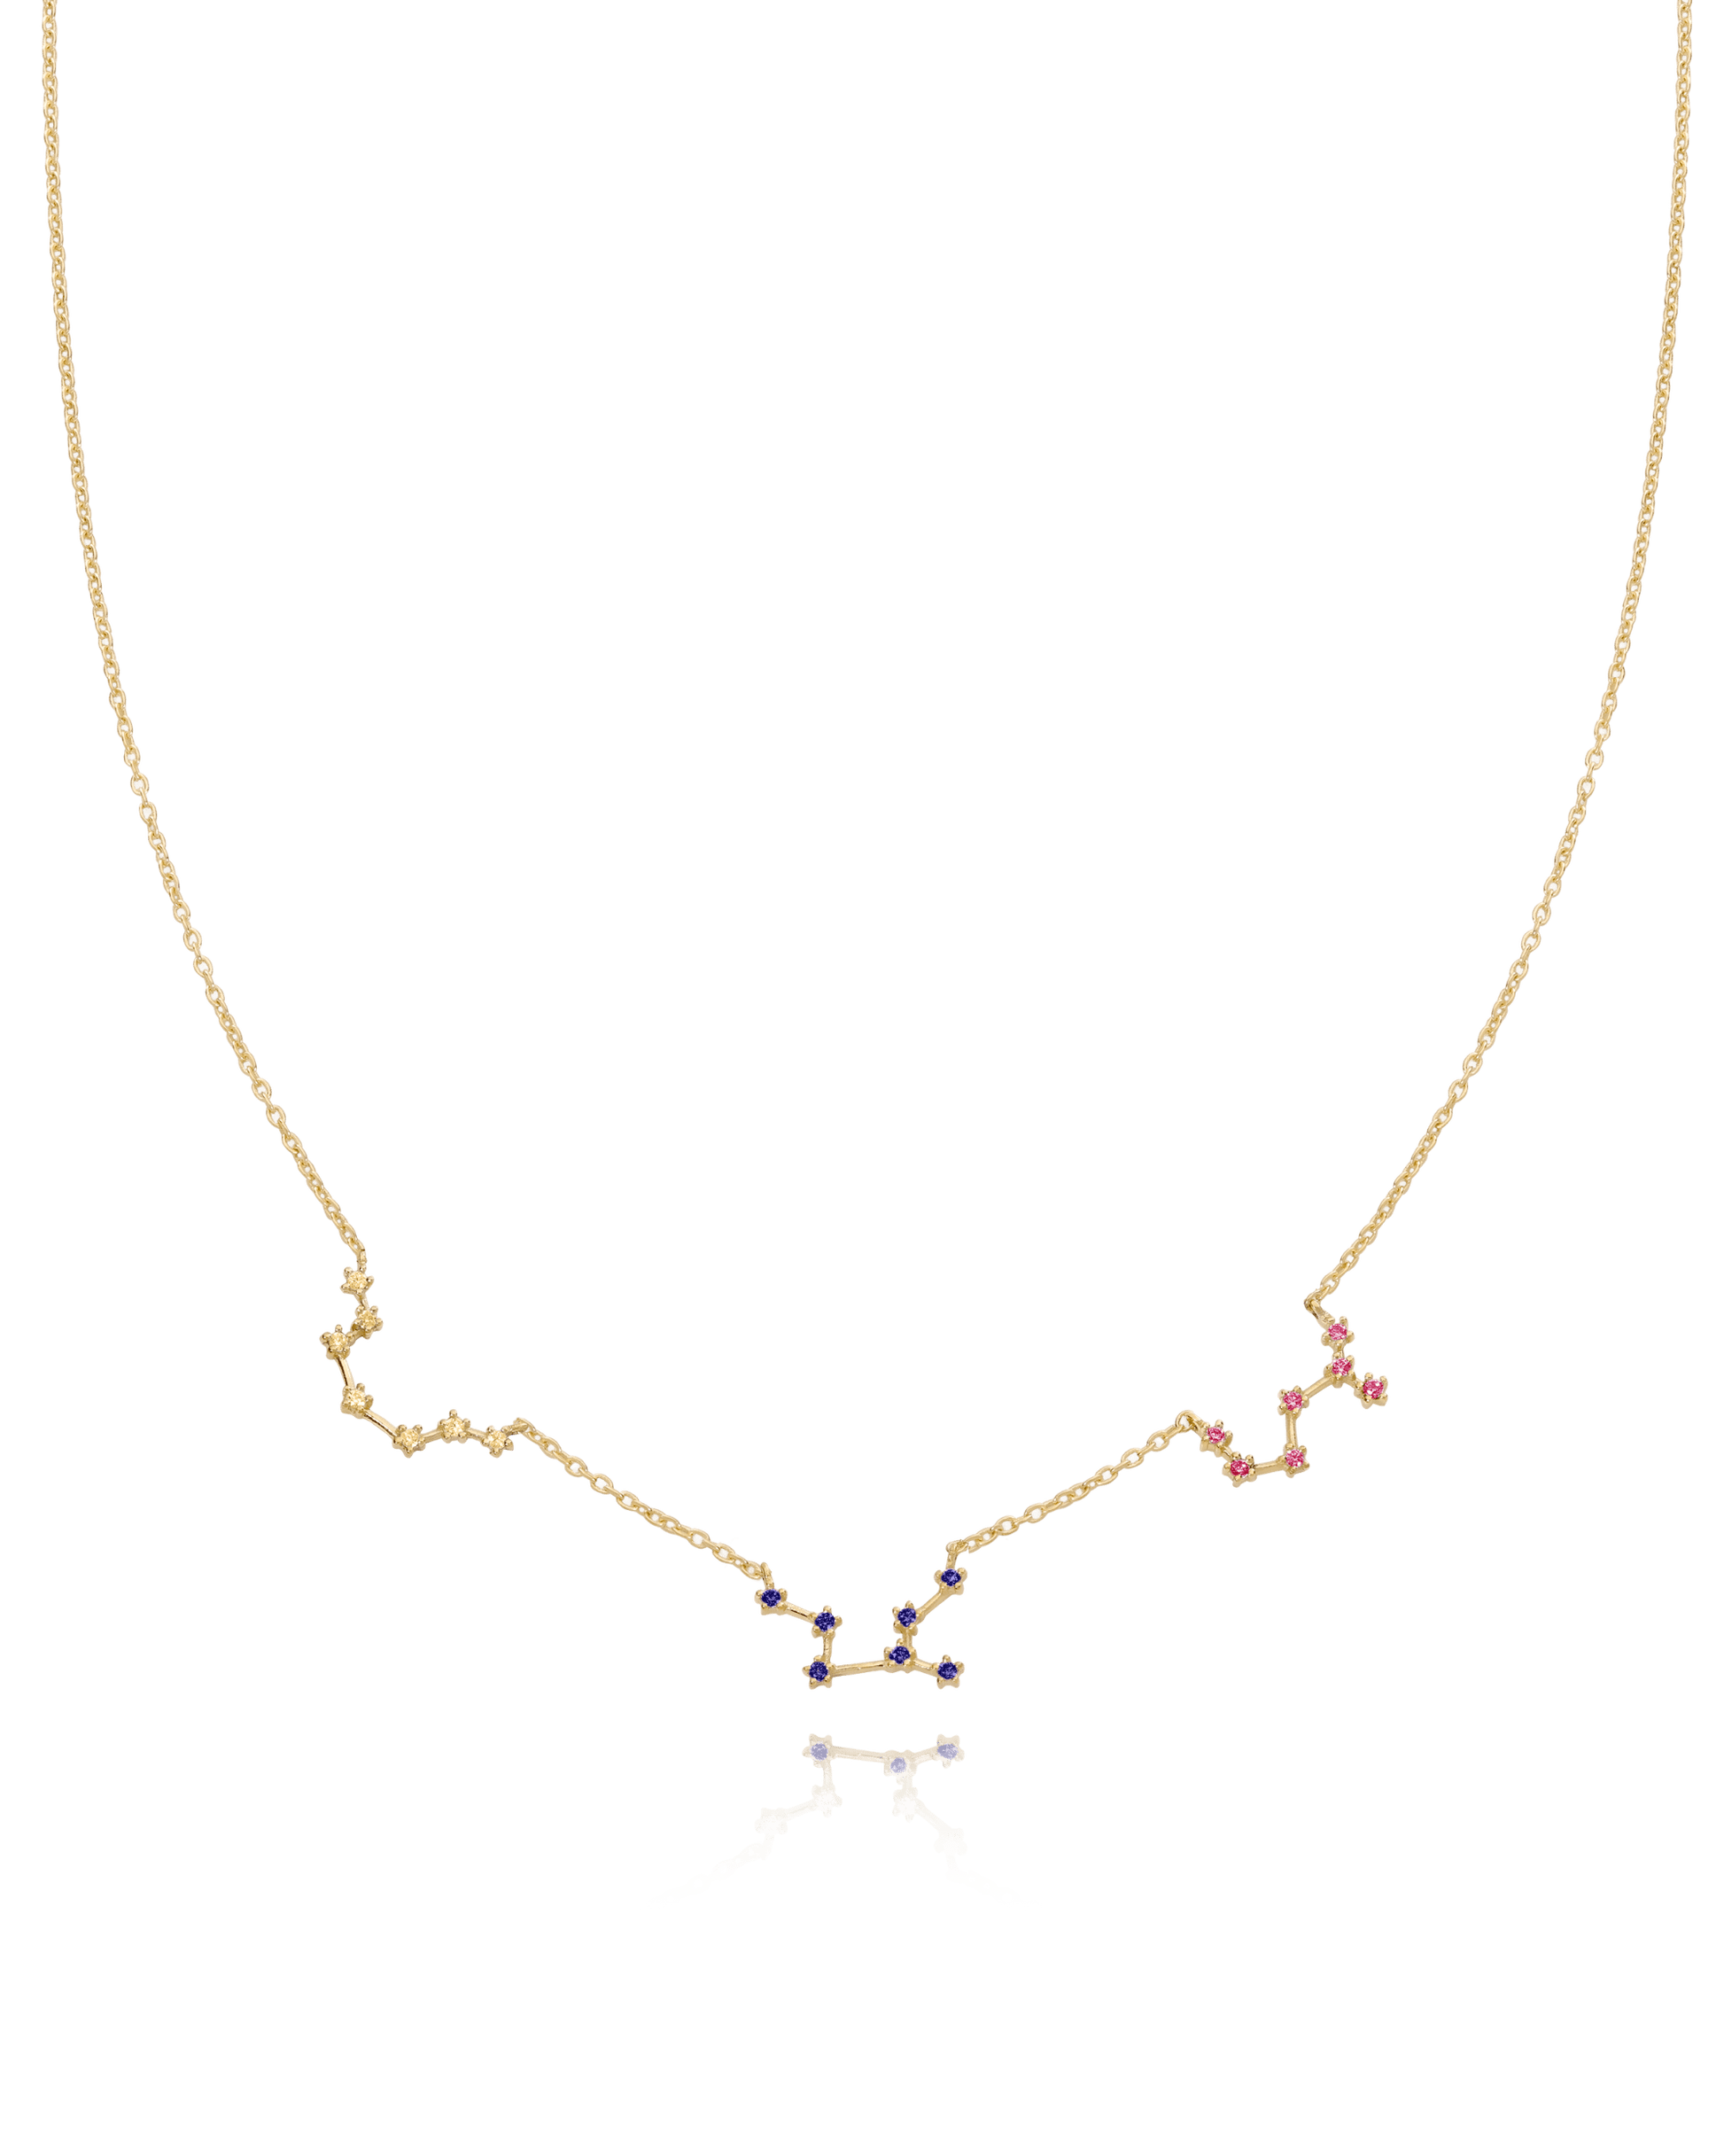 Constellation Birthstone Necklace - 18K Gold Vermeil Necklaces magal-dev 1 Constellation 16" 